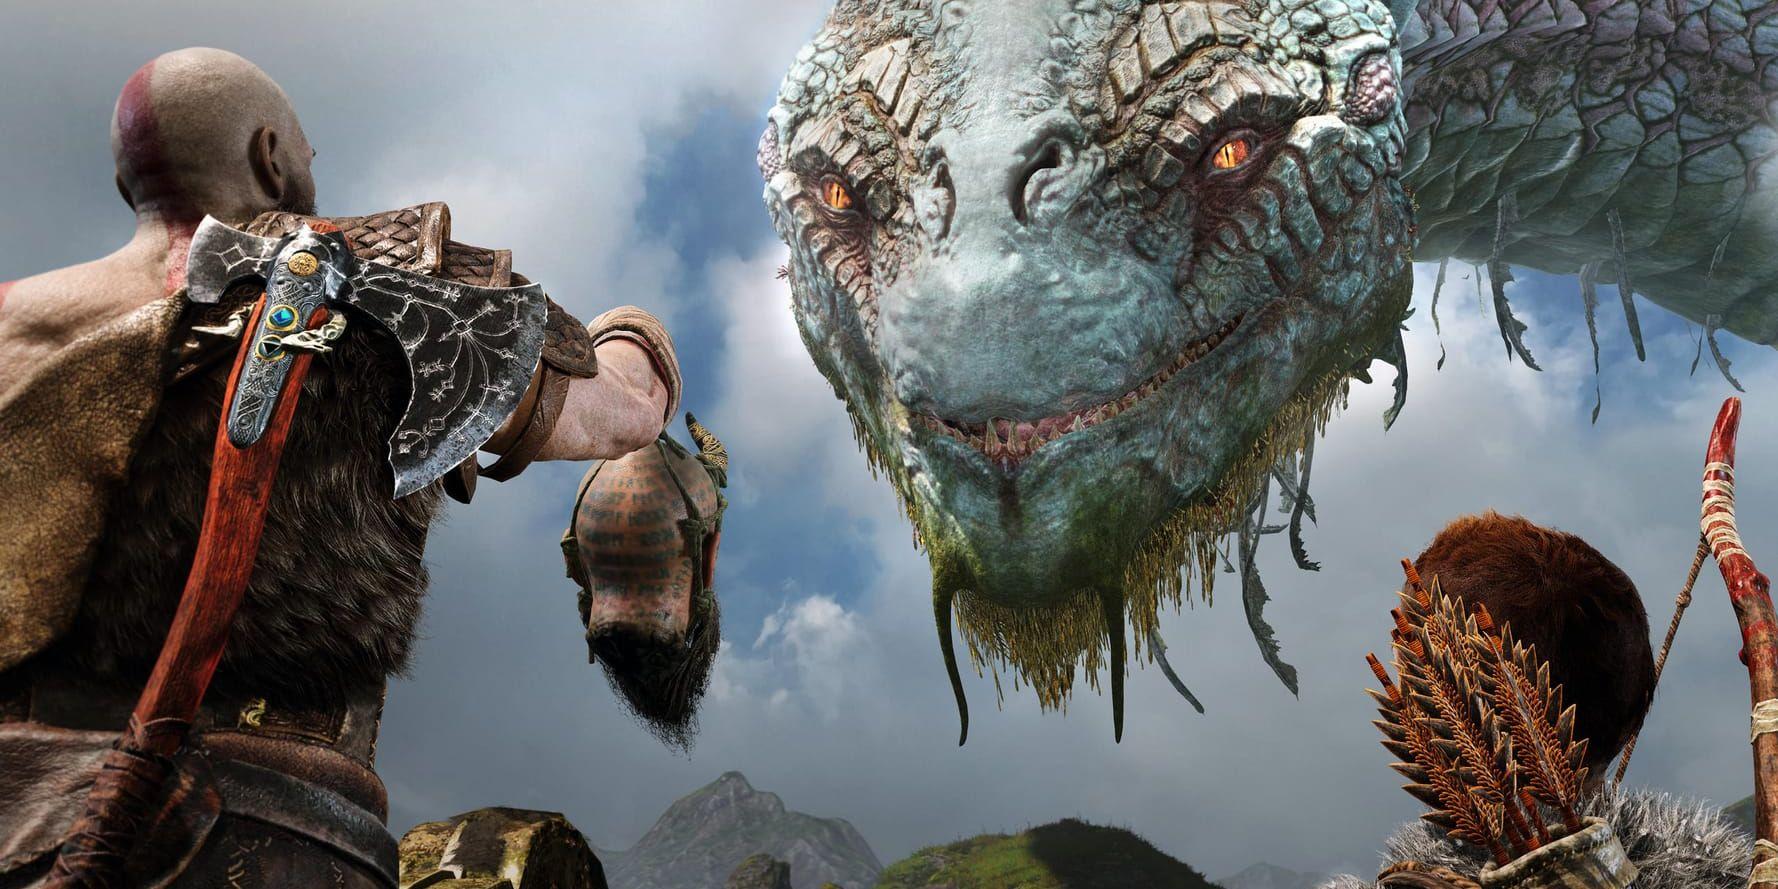 Actionäventyret "God of war" blev väl emottaget av både kritiker och spelare. Nu ska Sony släppa en dokumentär om hur spelet blev till. Pressbild.